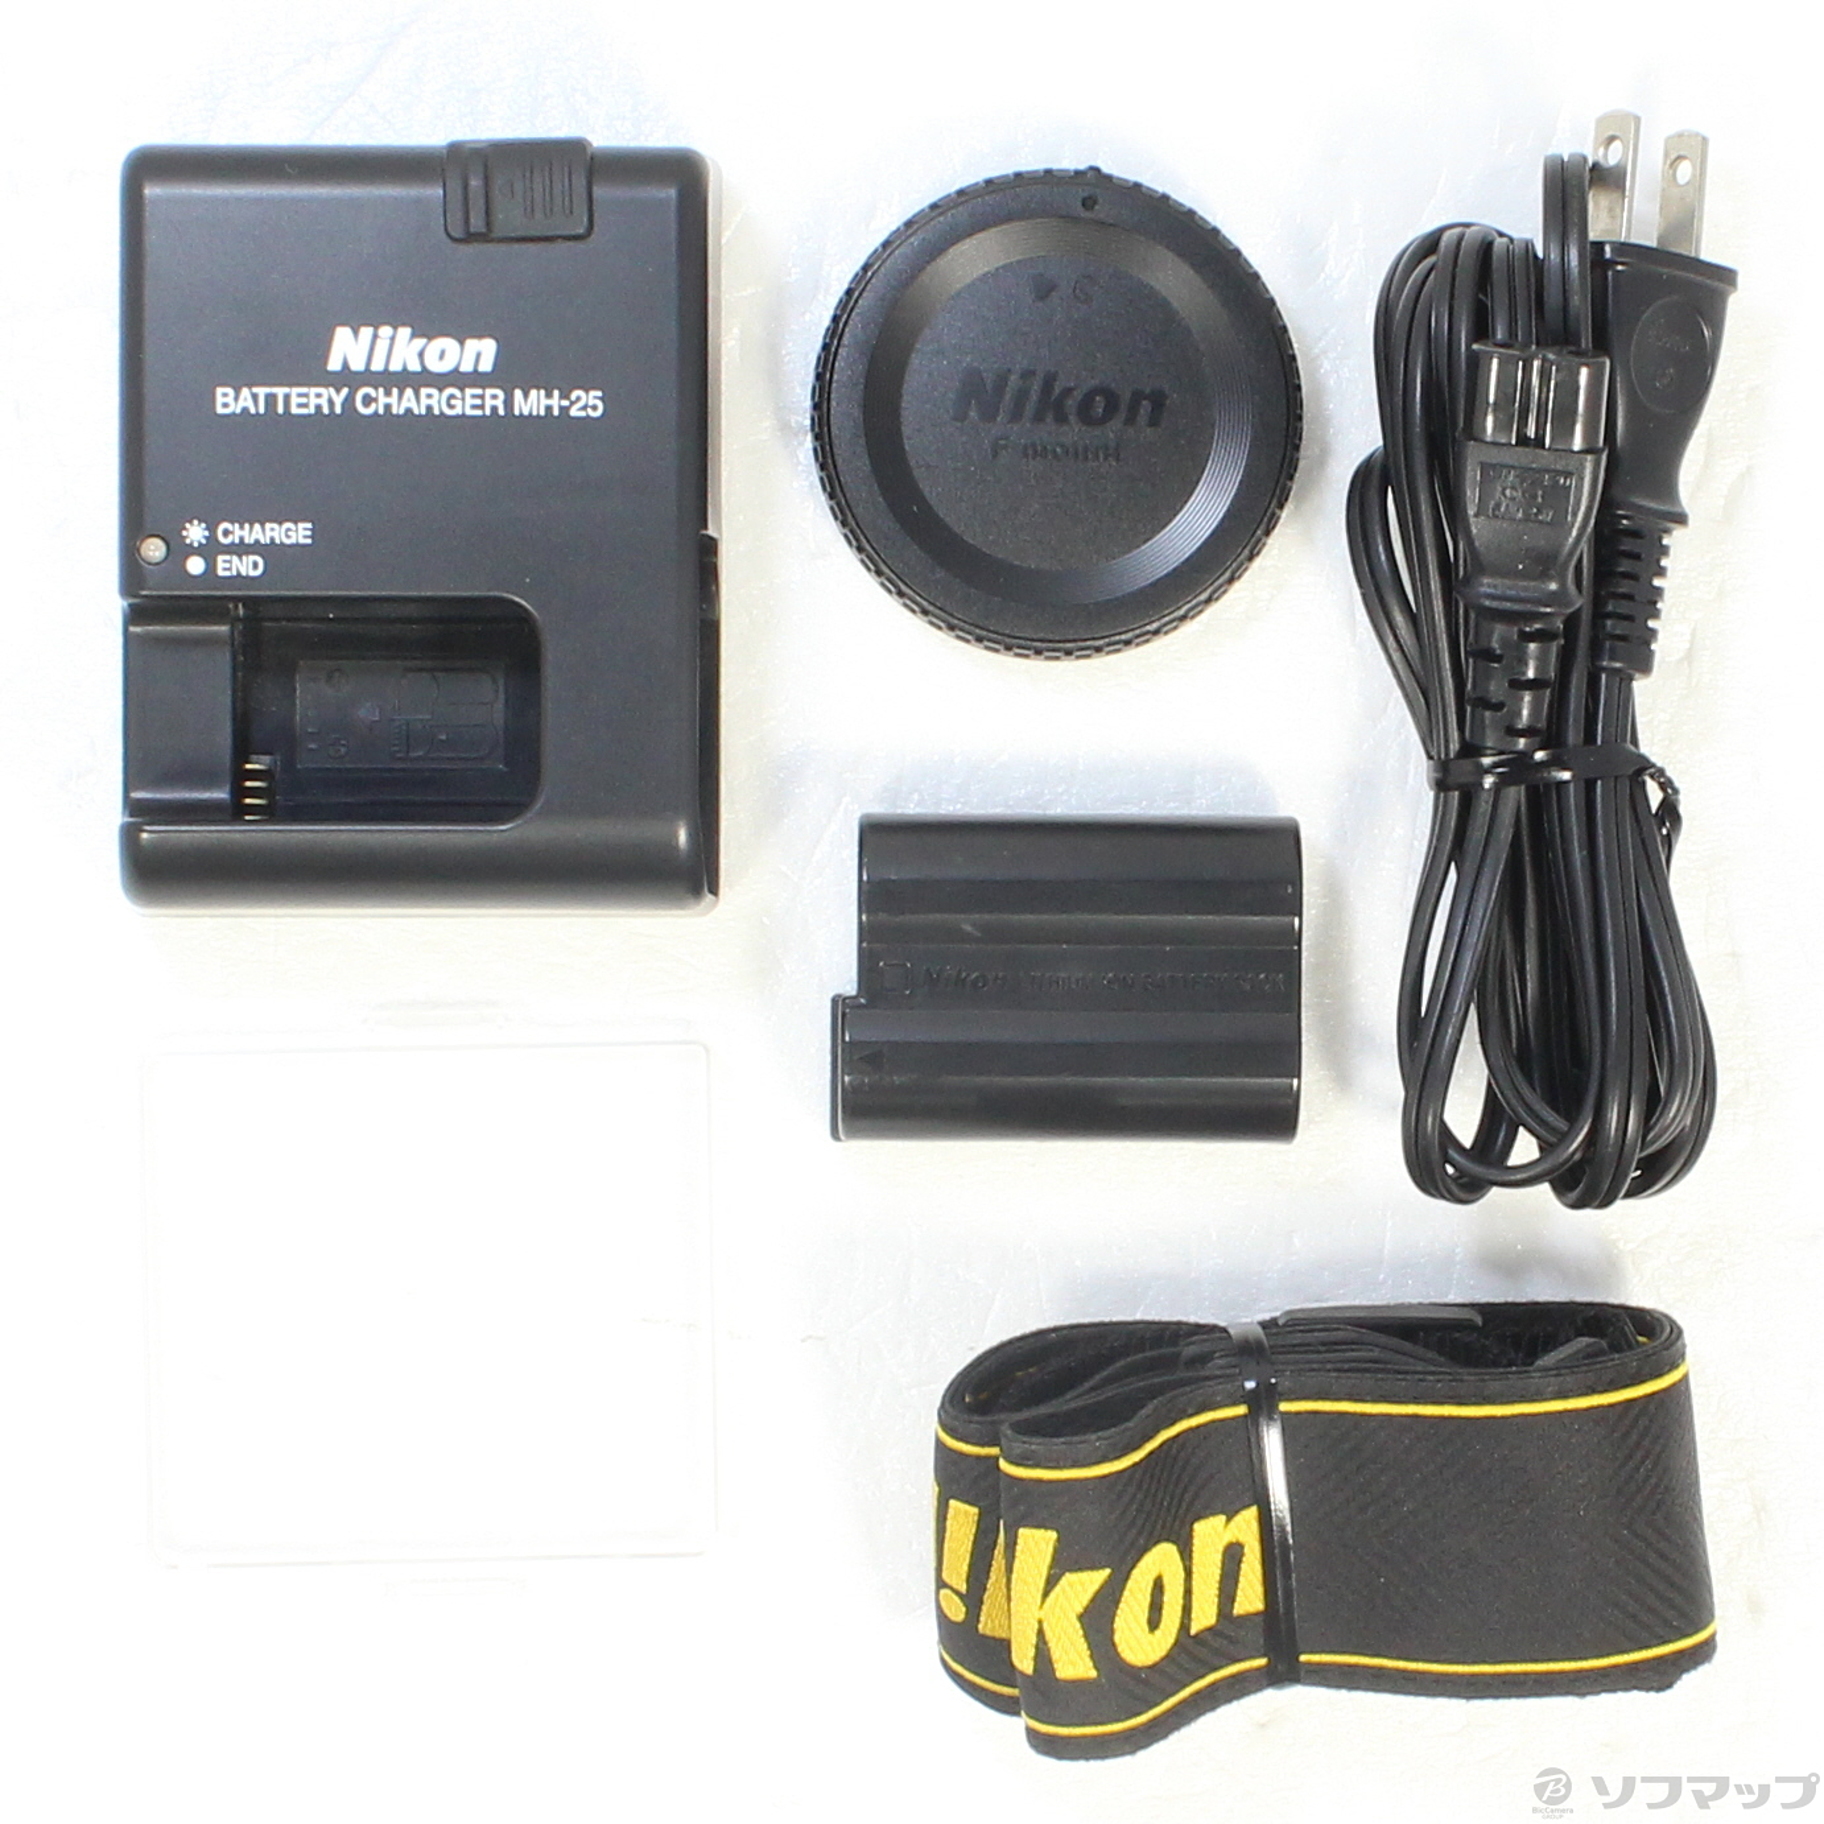 Nikon D800 ボディ